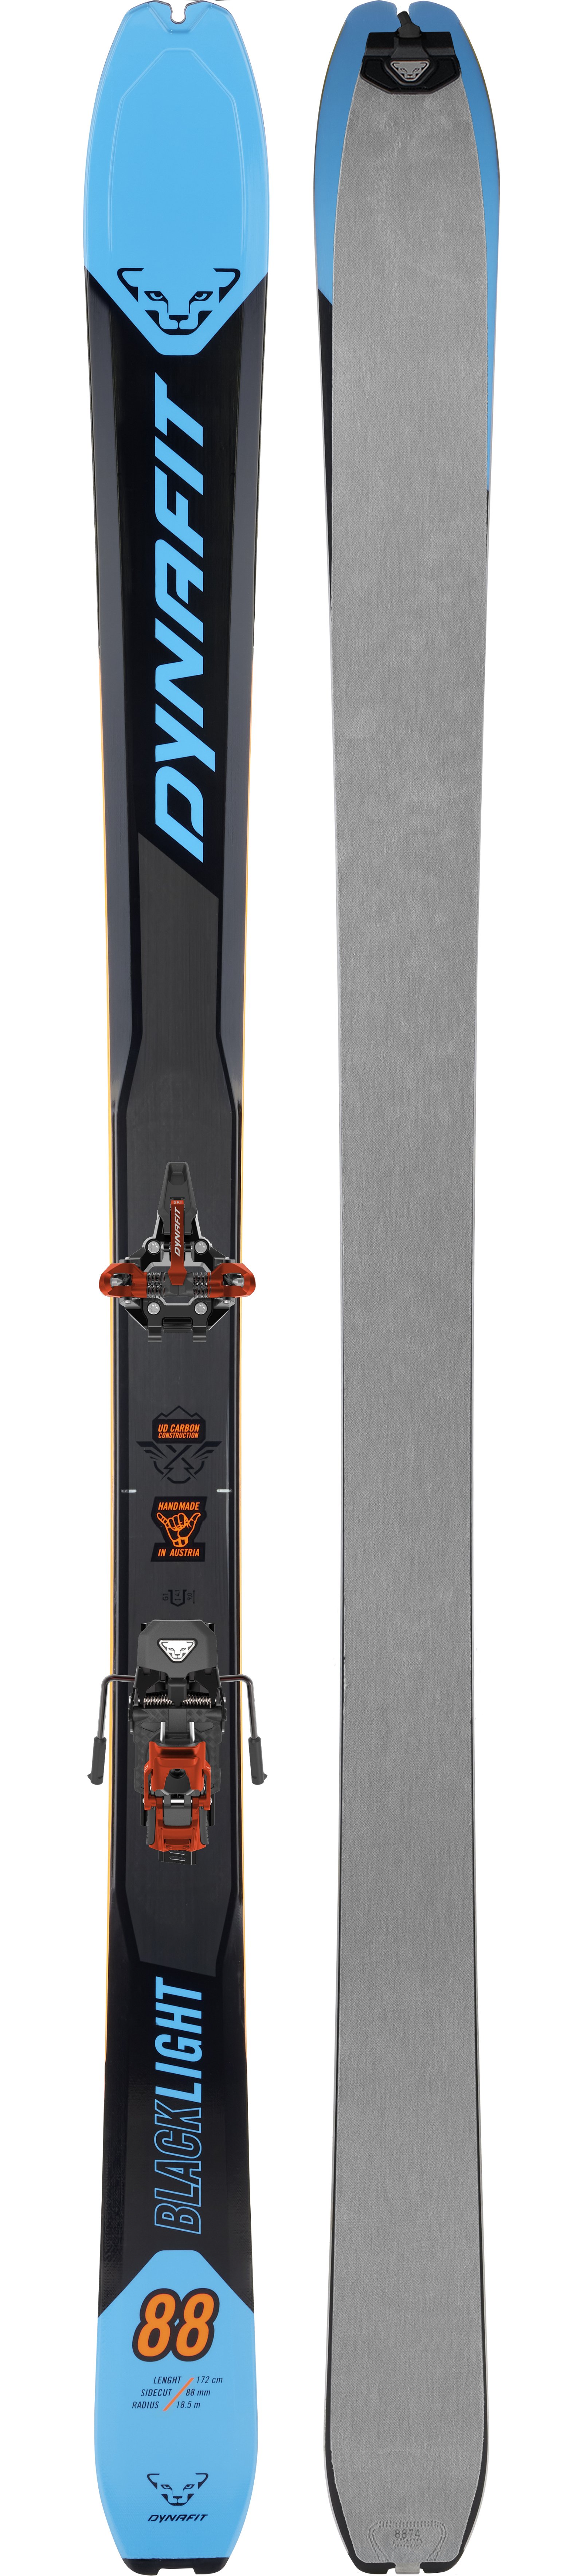 Dynafit Blacklight 88 Speed Ski Set | Ski og utstyr